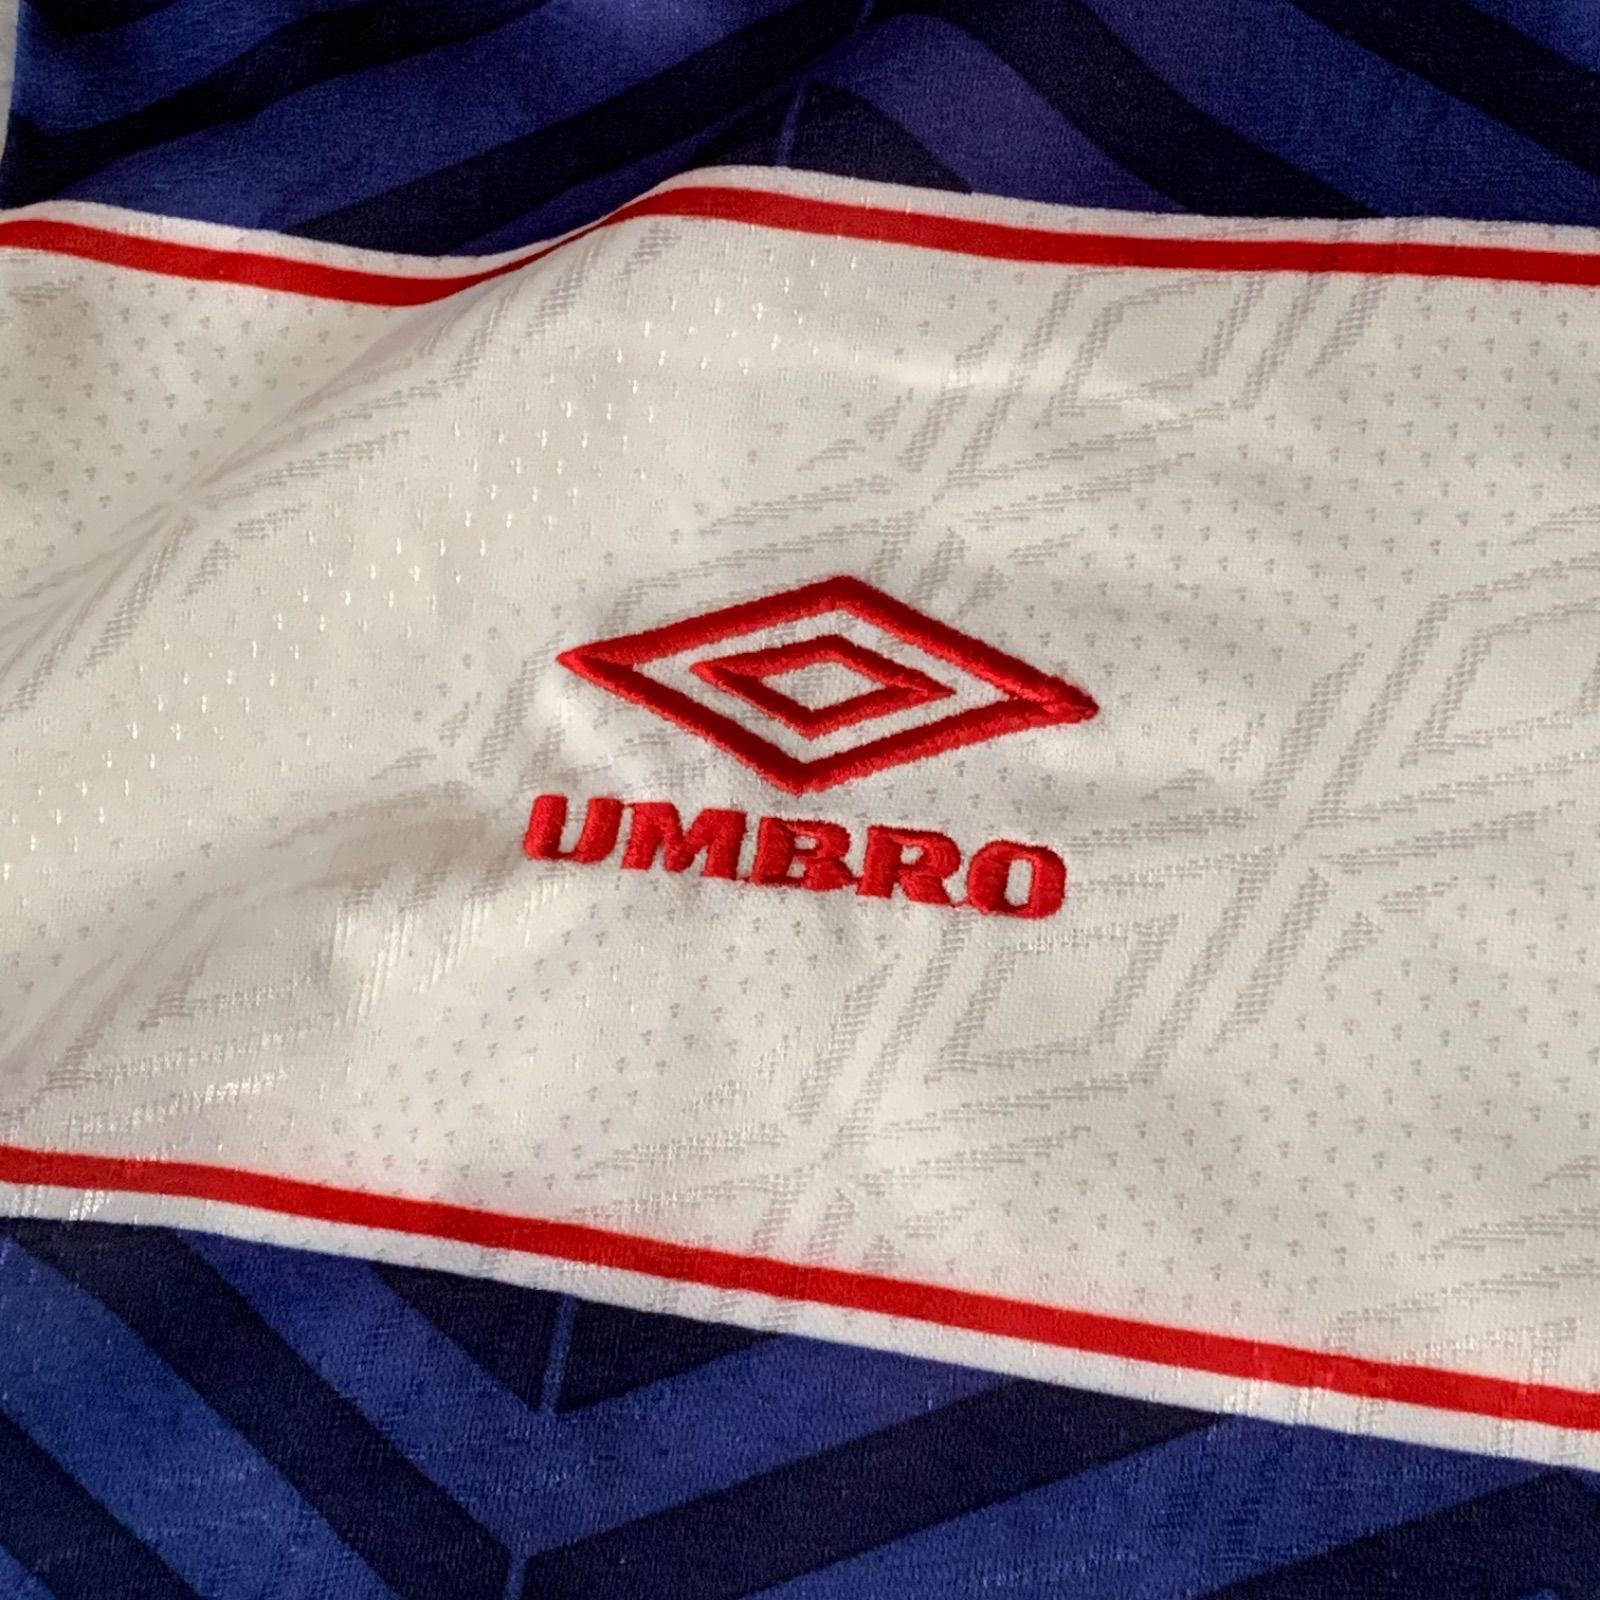 90s UMBRO S/S Football Game Shirt アンブロフットボールシャツ ゲームシャツ 半袖 ホワイト ブルー レッド Lサイズ  ロゴ刺繍 ボーダー Y2K ブロークコア フットボール サッカー ストリート アクロス